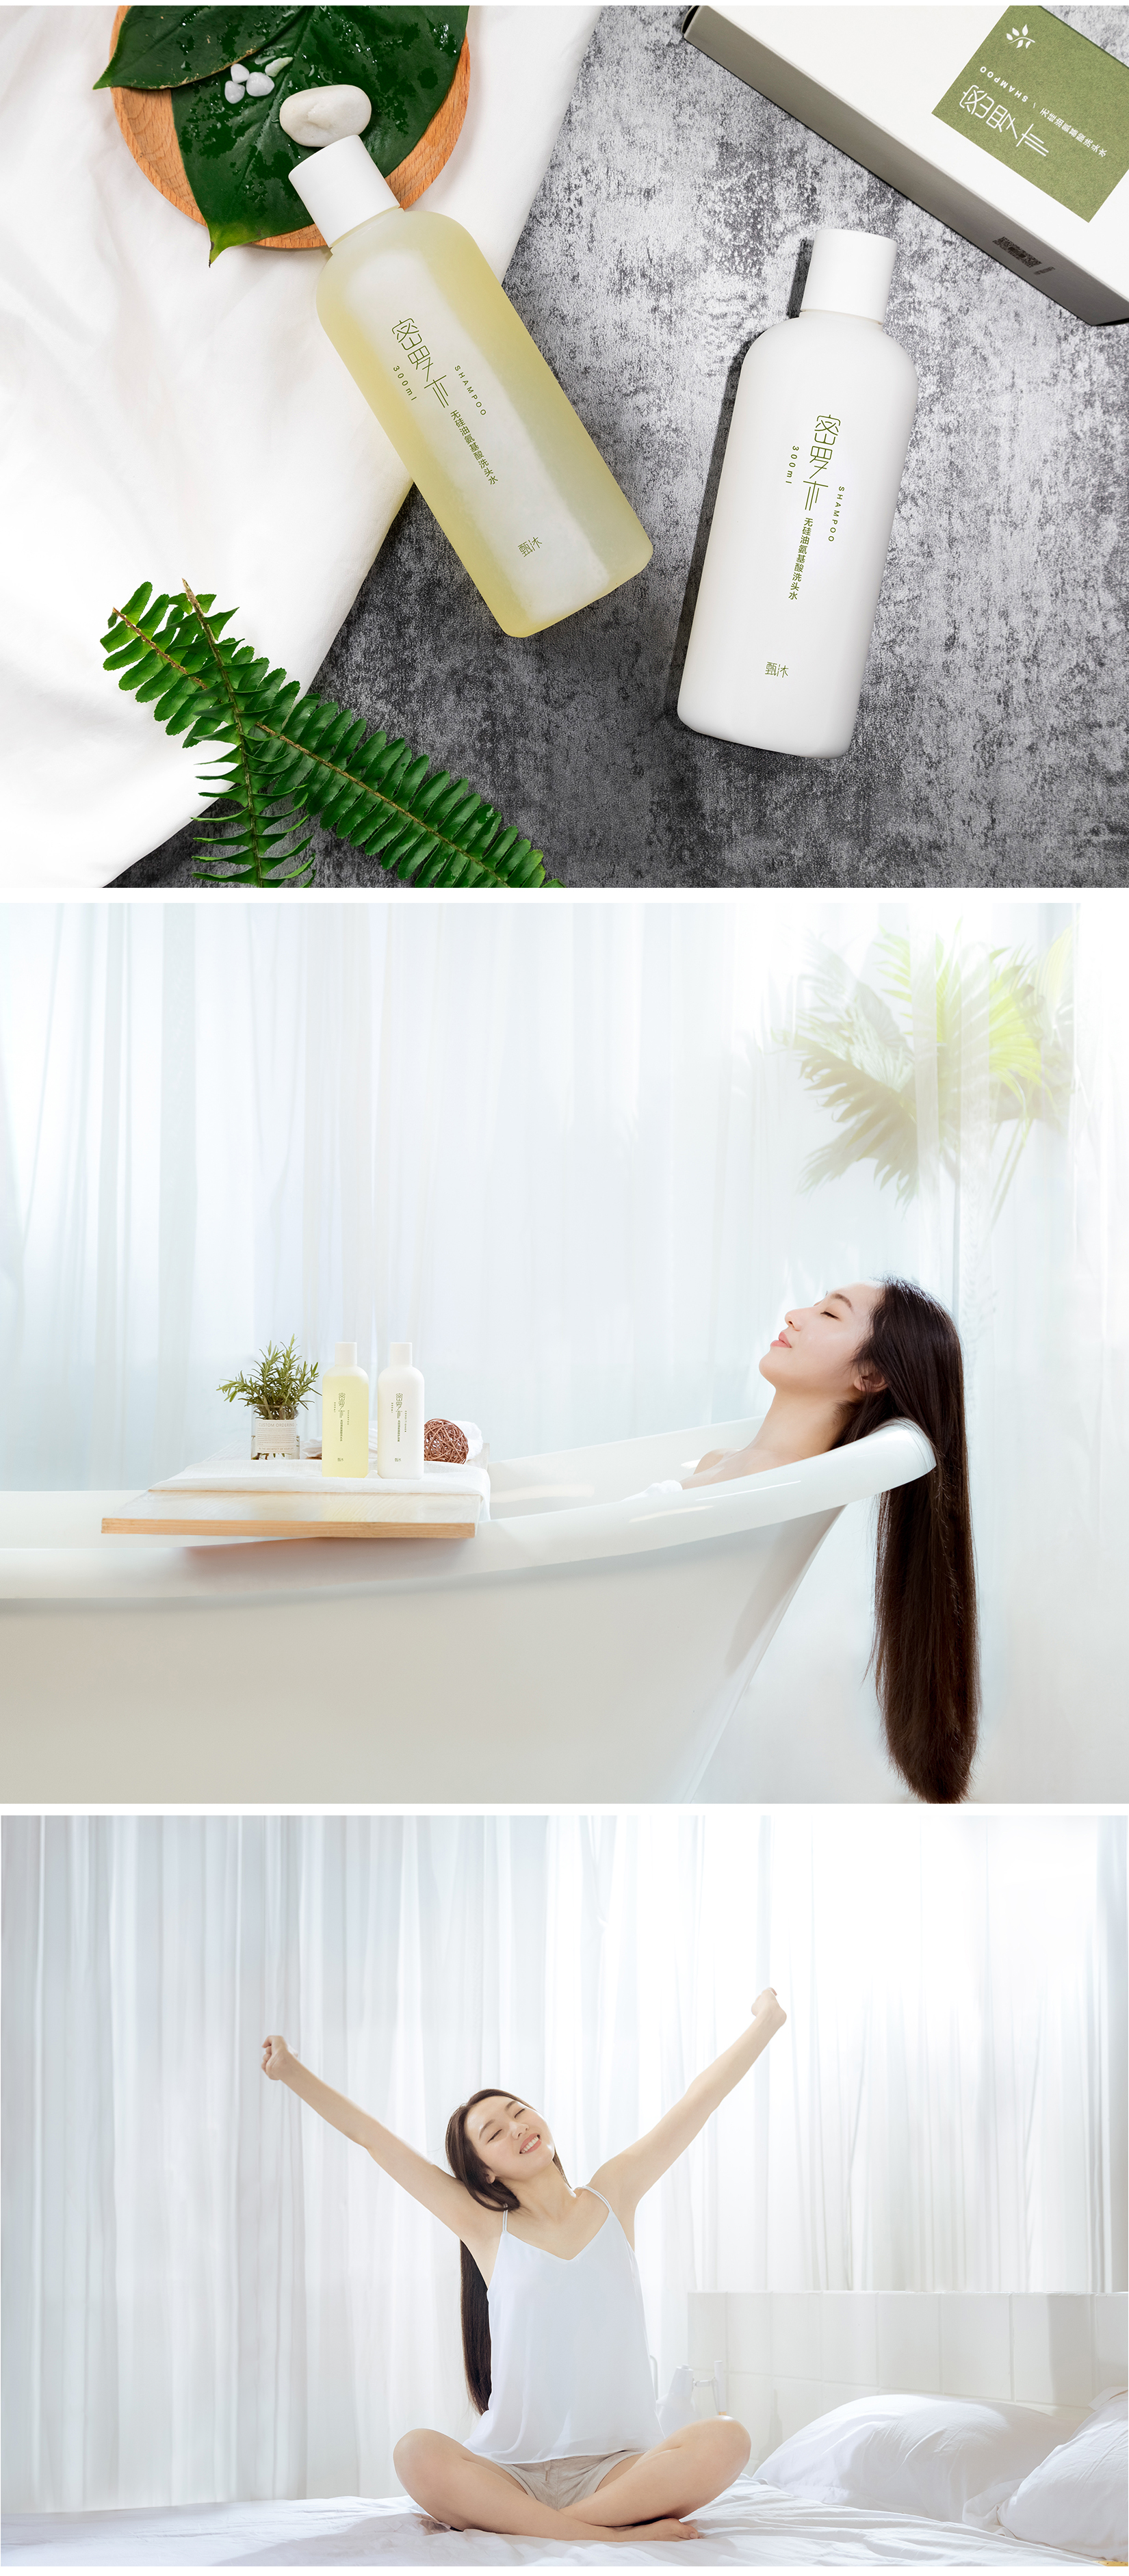 小米有品洗发水护发素电商详情页设计场景拍摄案例分享